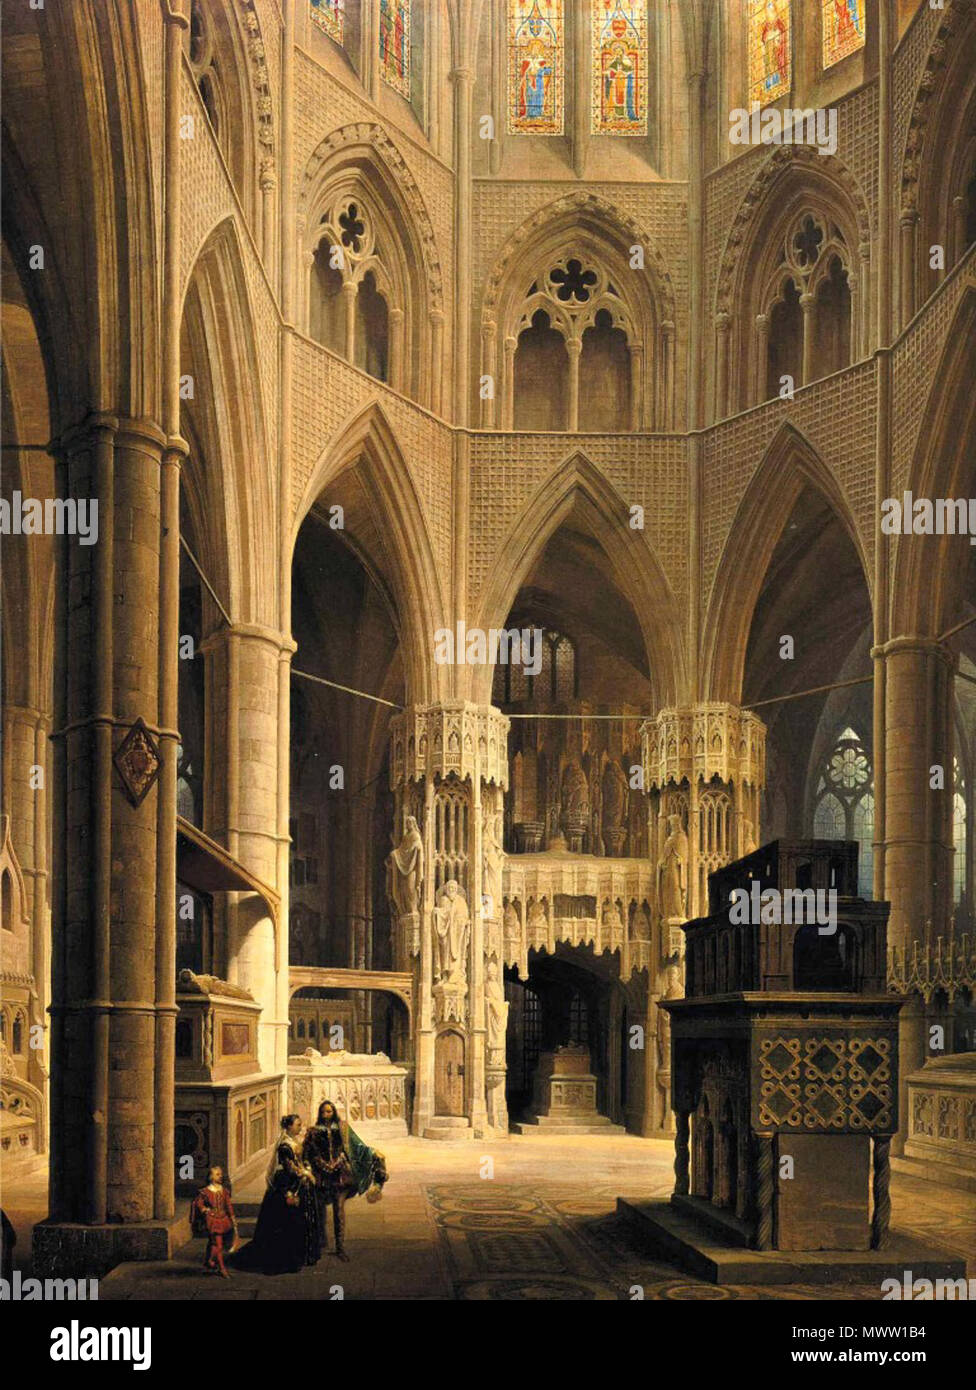 . English: The Choir of Westminster Abbey Owner/Location: Bayerische Staatsgemäldesammlungen - Munich Dimensions: Height: 189 cm (74.41 in.), Width: 145 cm (57.09 in.) . 1851. Max Ainmiller 594 The Choir of Westminster Abbey Stock Photo